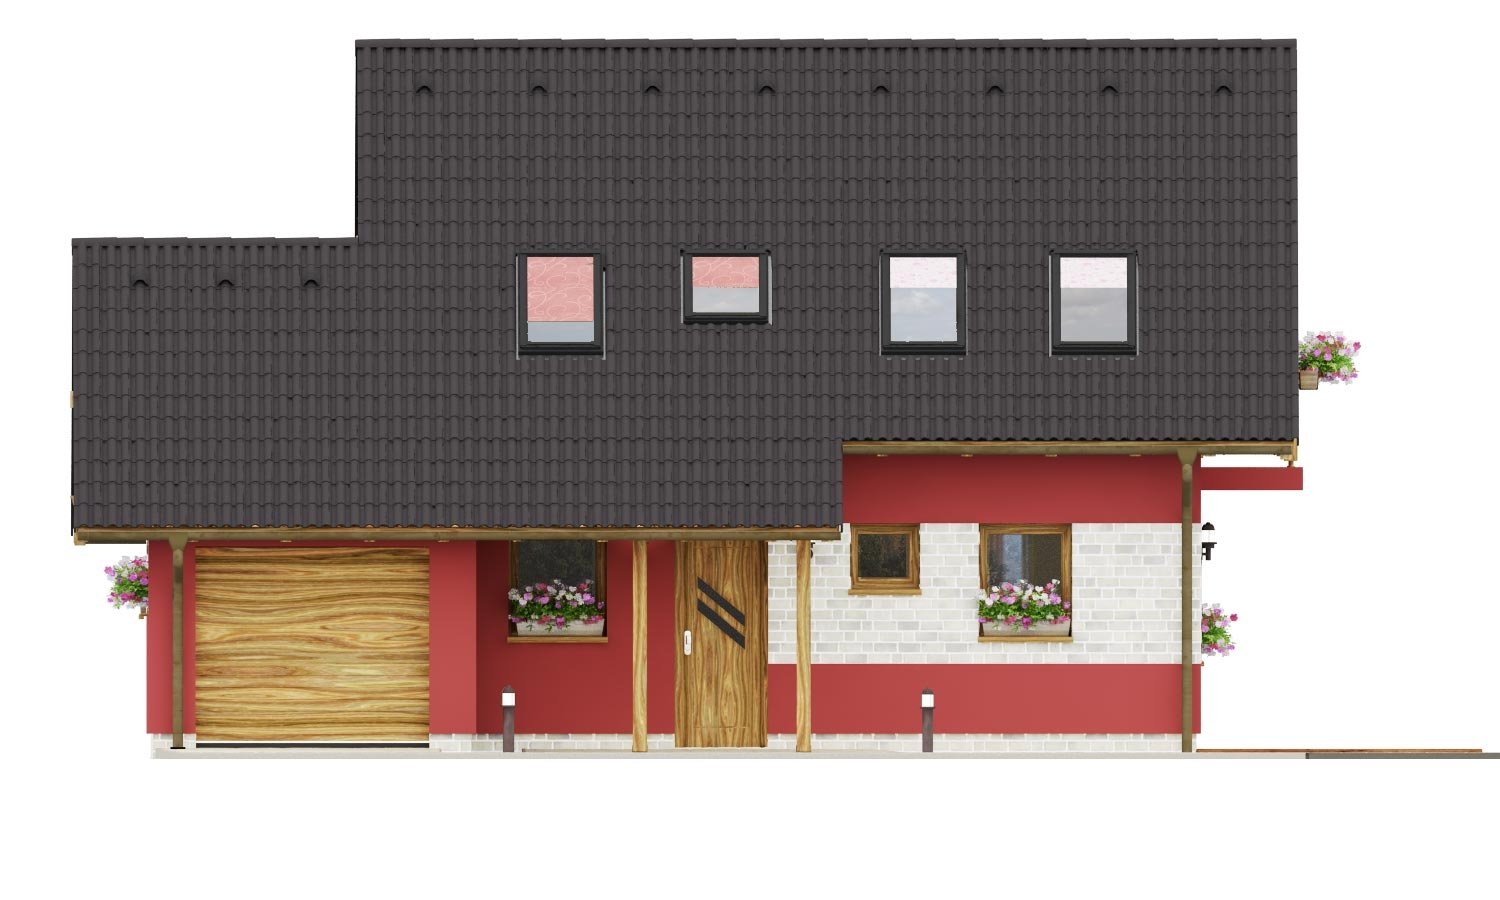 Pohľad 1. - Malý dům se sedlovou střechou a garáží.